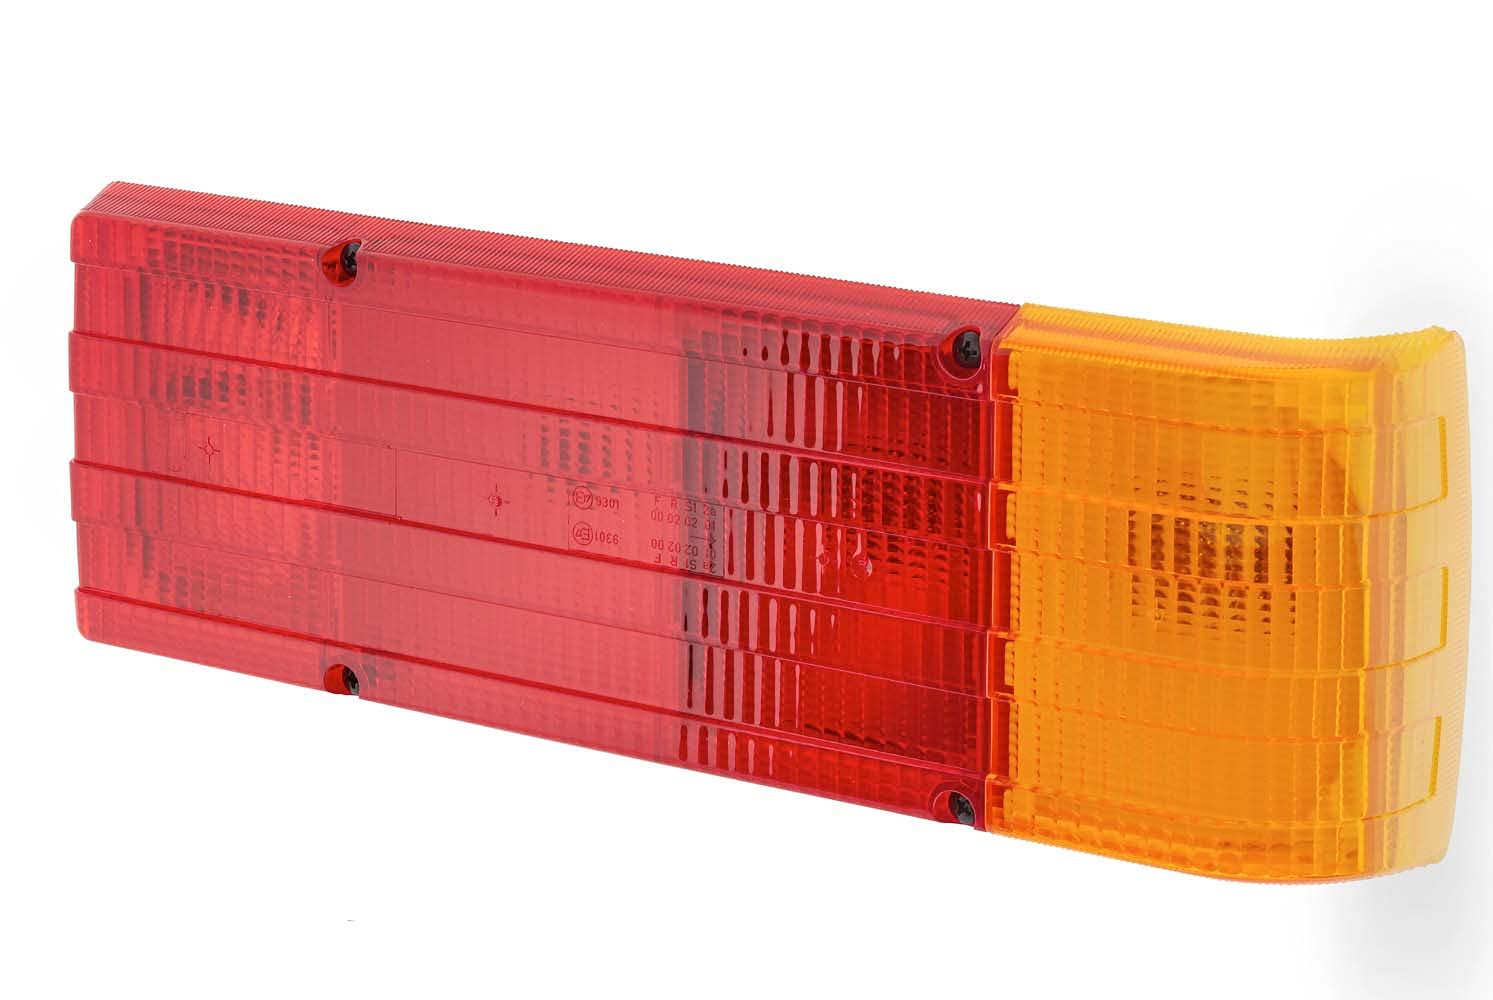 HELLA - Heckleuchte - Glühlampe - 12V - Einbau/geschraubt - Lichtscheibenfarbe: rot/gelb - Stecker: Flachstecker - rechts/links - Menge: 1 - 2SD 004 460-001 von Hella